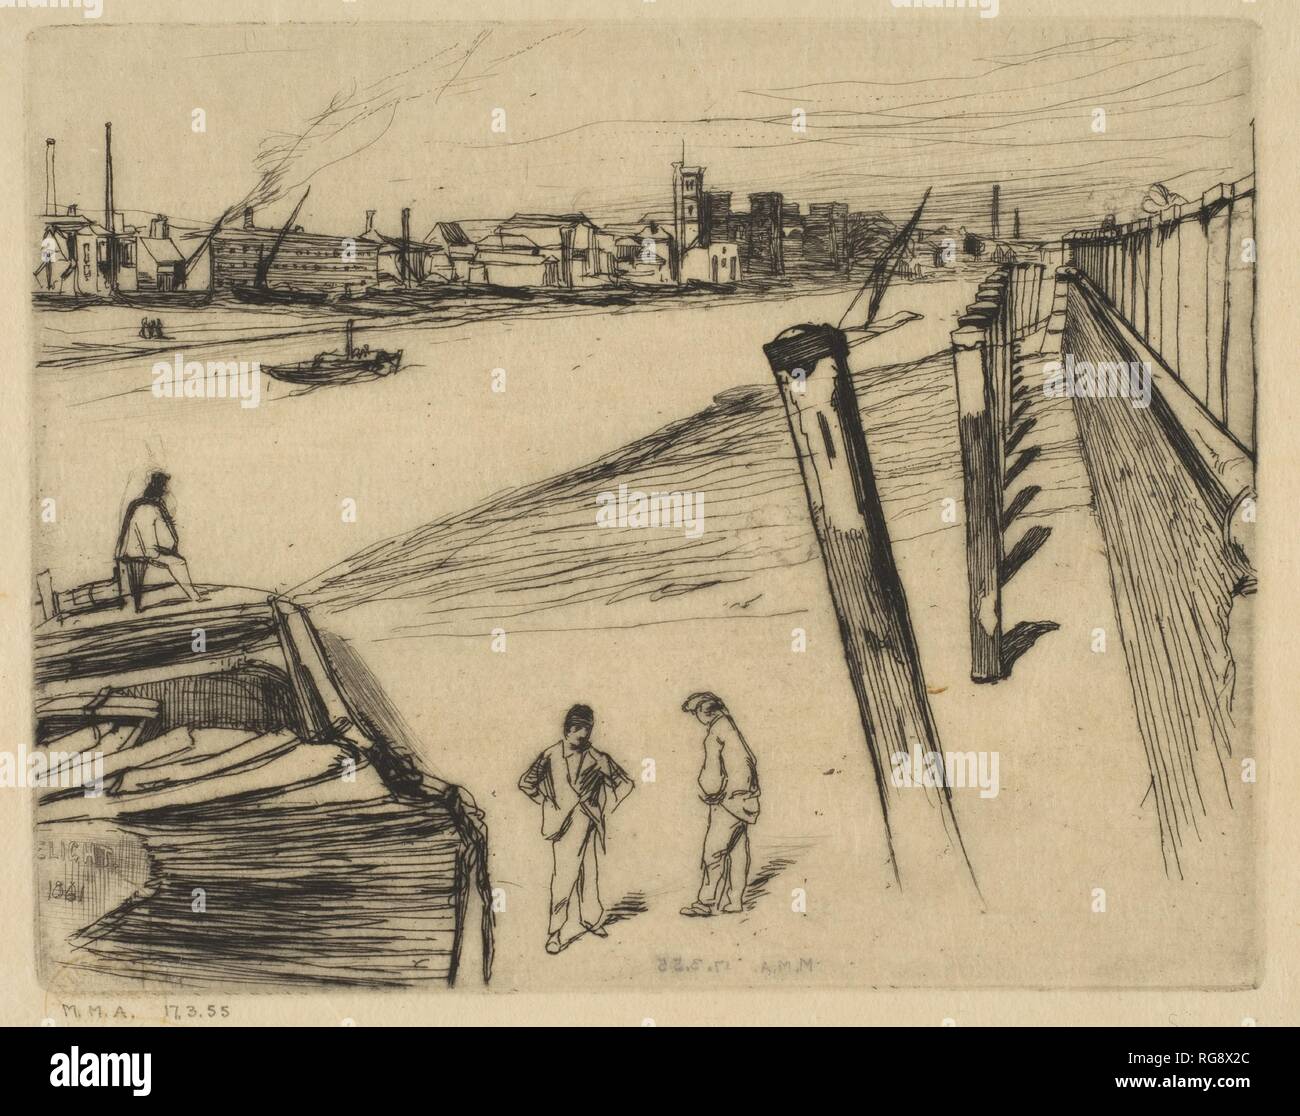 Millbank. Artista: James McNeill Whistler (American, Lowell Massachusetts 1834-1903 Londra). Dimensioni: Piastra: 3 7/8 × 4 15/16 in. (9,8 × 12,6 cm) foglio: 6 1/2 x 7 1/4 in. (16,5 x 18,4 cm). Serie/Portfolio: Thames Set ("Una serie di sedici incisioni di scene del Tamigi e altri soggetti" 1871). Data: 1861. Bruscamente sfuggente posti di ormeggio e di un argine alto a destra di orientare il nostro occhio verso depositi distanti e una chiesa a Lambeth, sulla riva sud del Tamigi. Questo effetto, insieme con la forma ritagliata di una massiccia barge in basso a sinistra e assetto balza in primo piano, echo dev Foto Stock